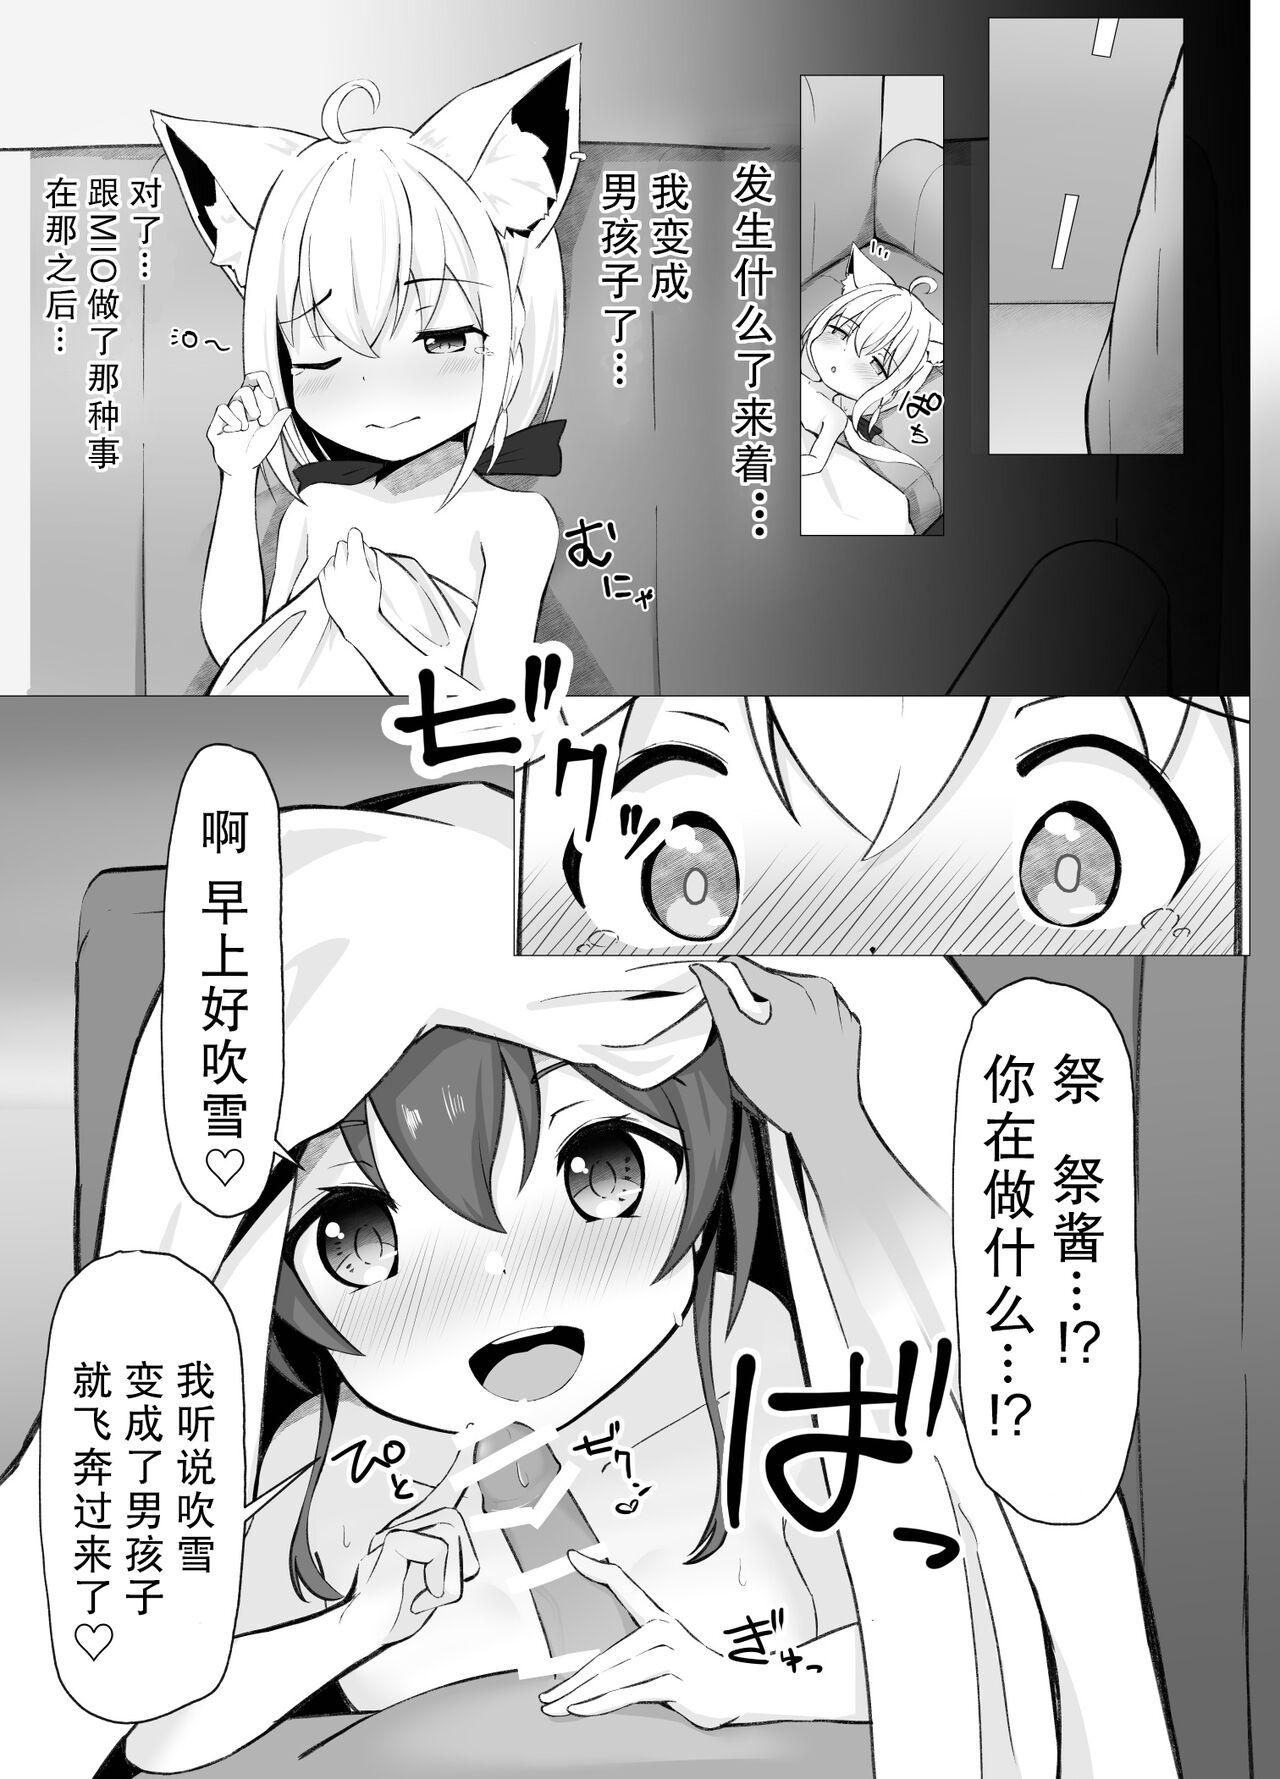 Slut SyotaFubuki × MatsuriChan no onesyotaecchimangan - Hololive Banheiro - Page 5